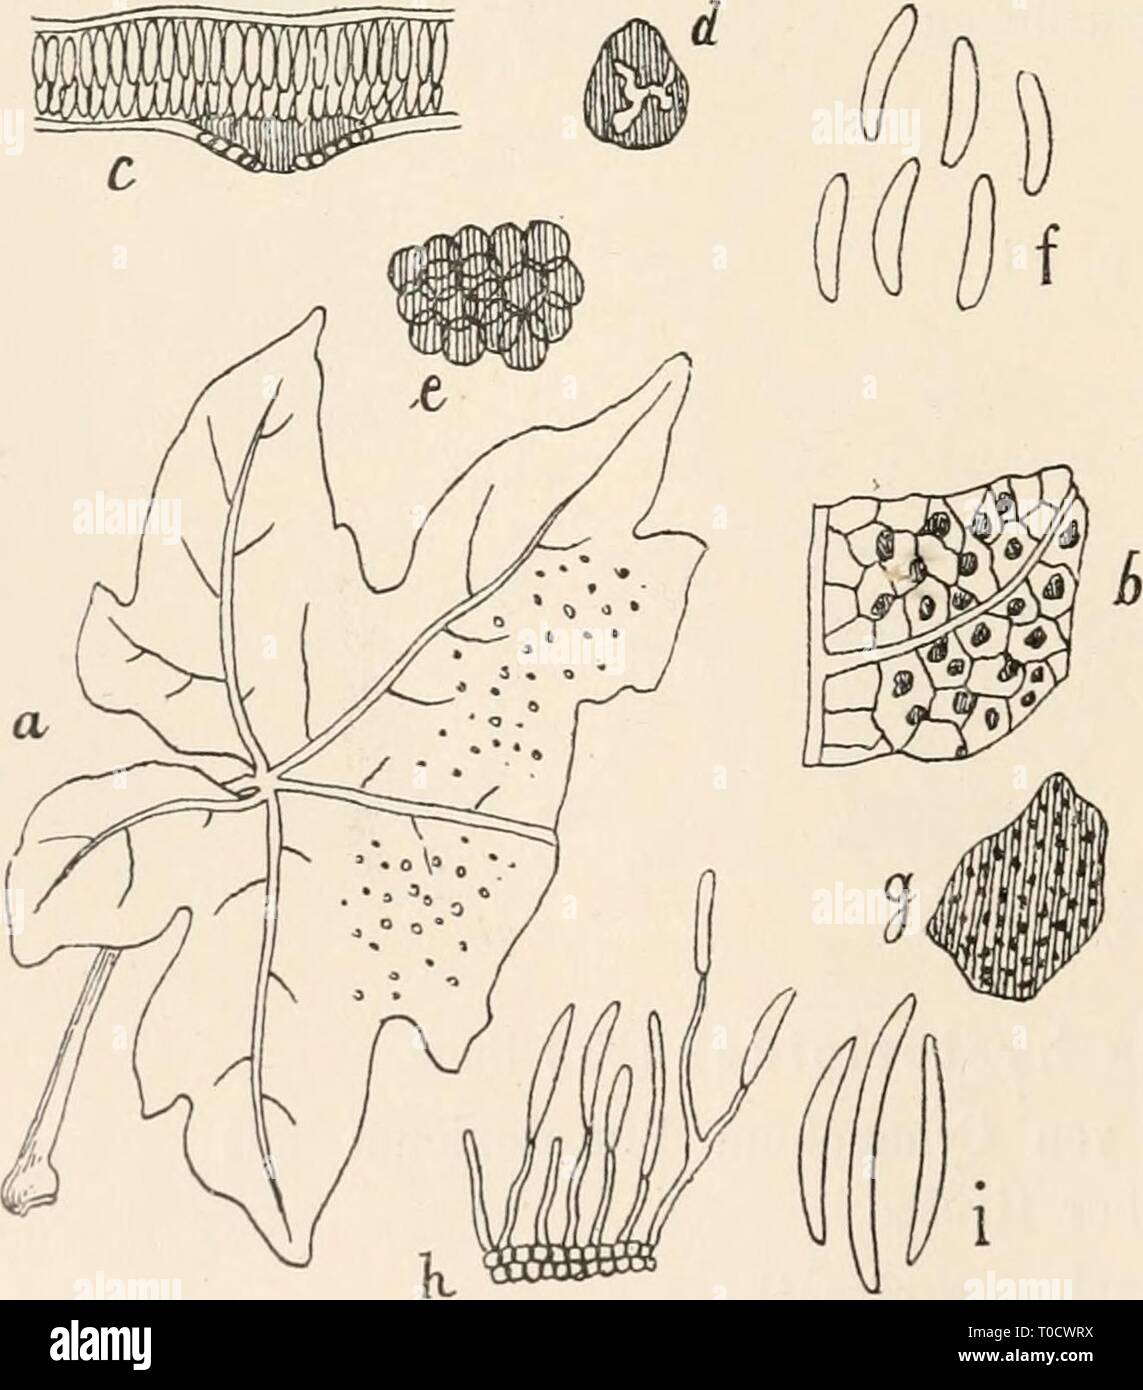 Dr L Rabenhorst's Kryptogamen-Flora von Dr. L. Rabenhorst's Kryptogamen-Flora von Deutschland, Oesterreich und der Schweiz drlrabenhorstskr0107rabe Year: 1903  Entomosporium Mespili (DC.) Sacc. Eine sehr vergrösserte, vierzellige Spore. Nach Fuckel, Symb. mycol. tab. II. fig. 24. I. Abtheilung. HyalOSporae Sacc. C. I^eptotliyrin 111 Kunze et Schm., Mykol. Hefte II. p. 79 eniend. Sacc., Mich. II. p. 114, No. 955; Syll. III. p. Q26. Fruchtgehäuse halbirt, schildförmig, häutig-kohlig, schwarz, rnündungslos oder verschieden sich öffnend, dann ringsherum sich loslösend, meist von deutlich strahlig- Stock Photo